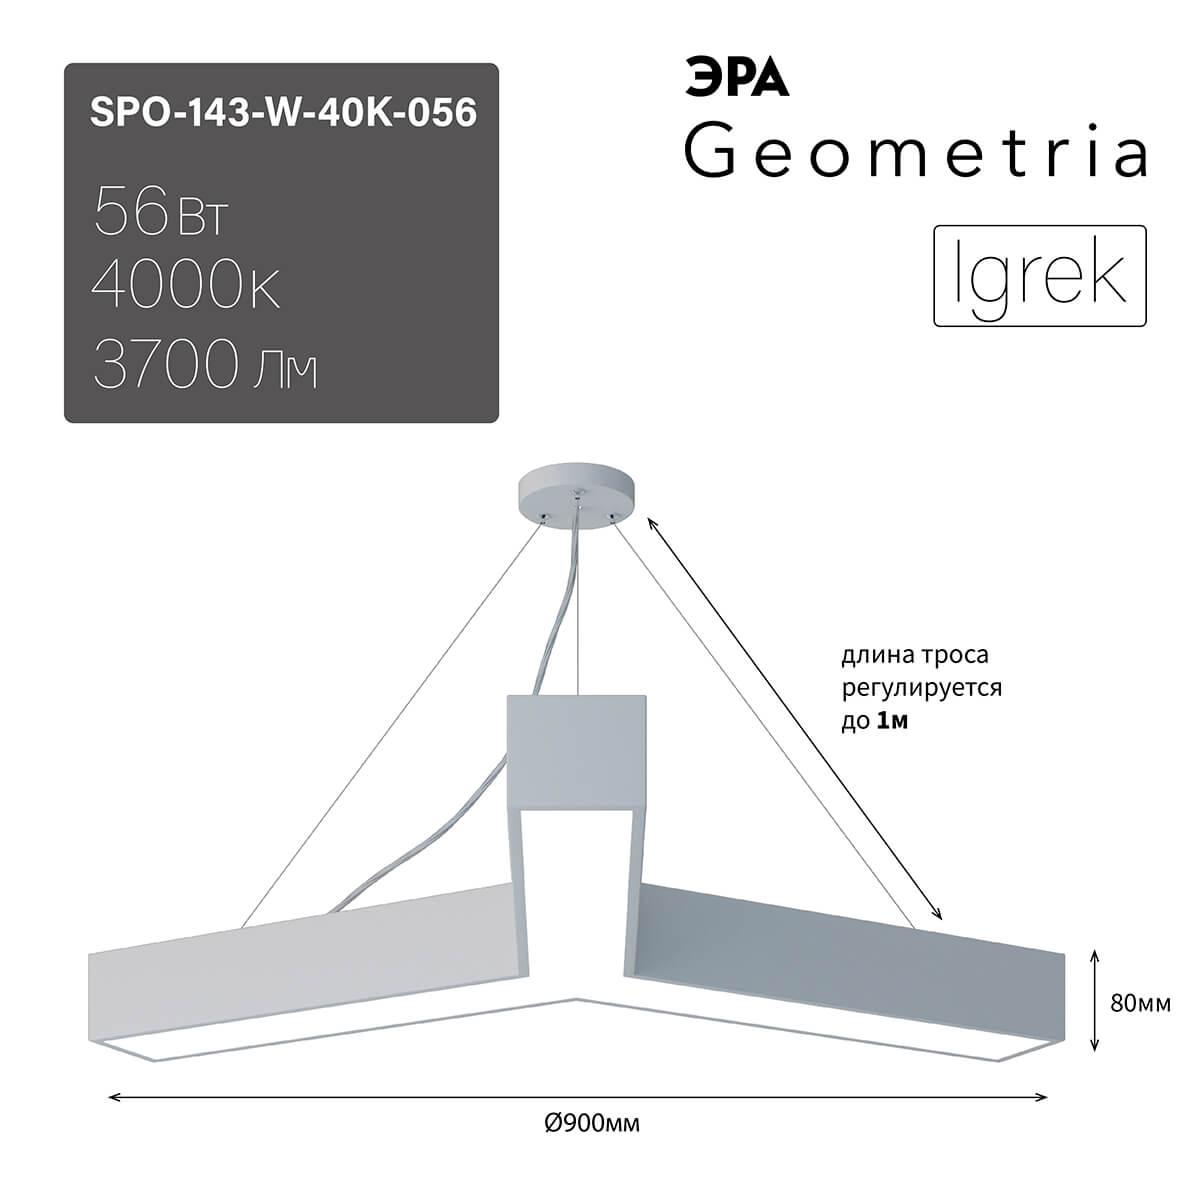 подвесной светодиодный cветильник geometria эра igrek spo-143-w-40k-056 56вт 4000к белый б0050570